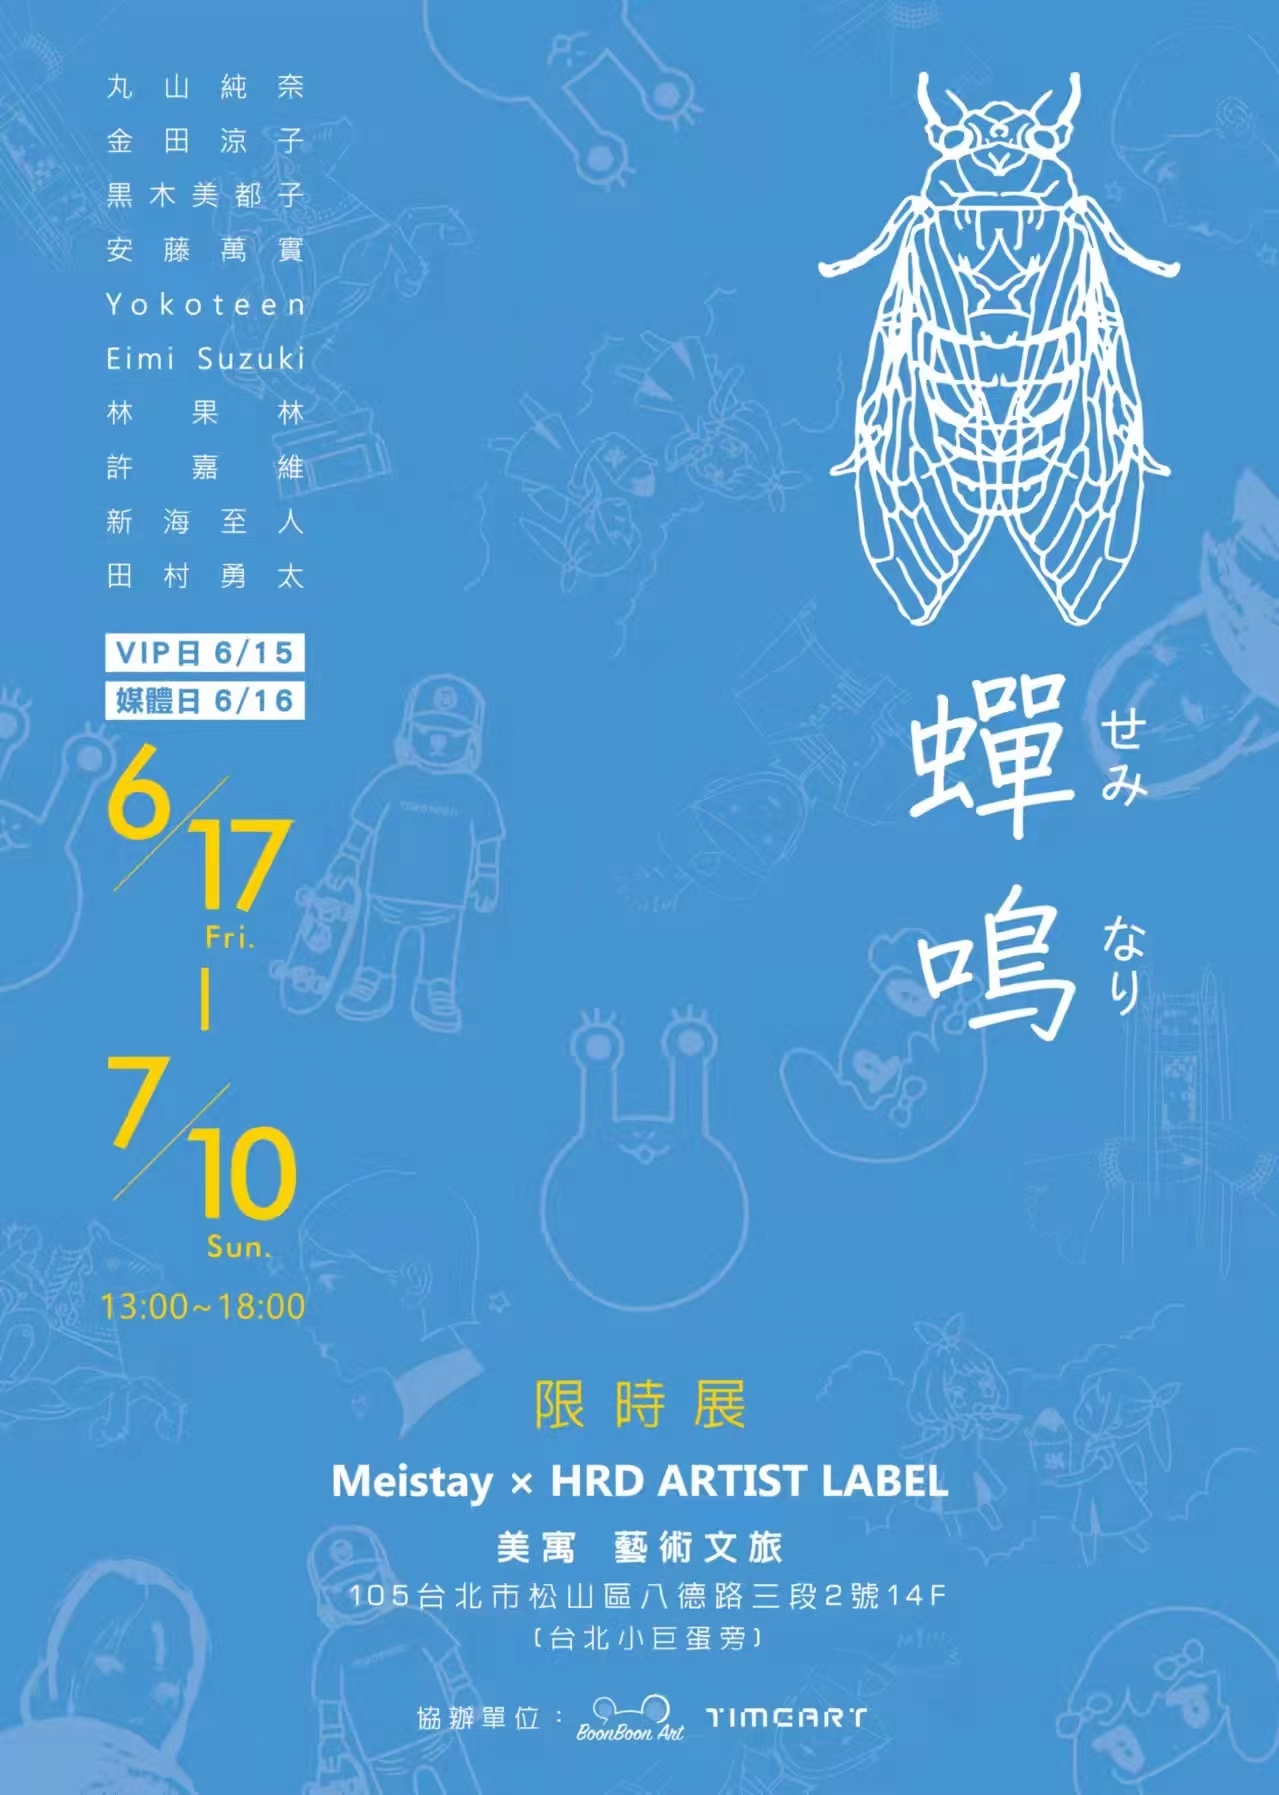 日本の若手アーティストの展覧会「蝉鳴(せみなり)」を
台湾・台北市のホテルにて6/17～7/10に開催 – Net24